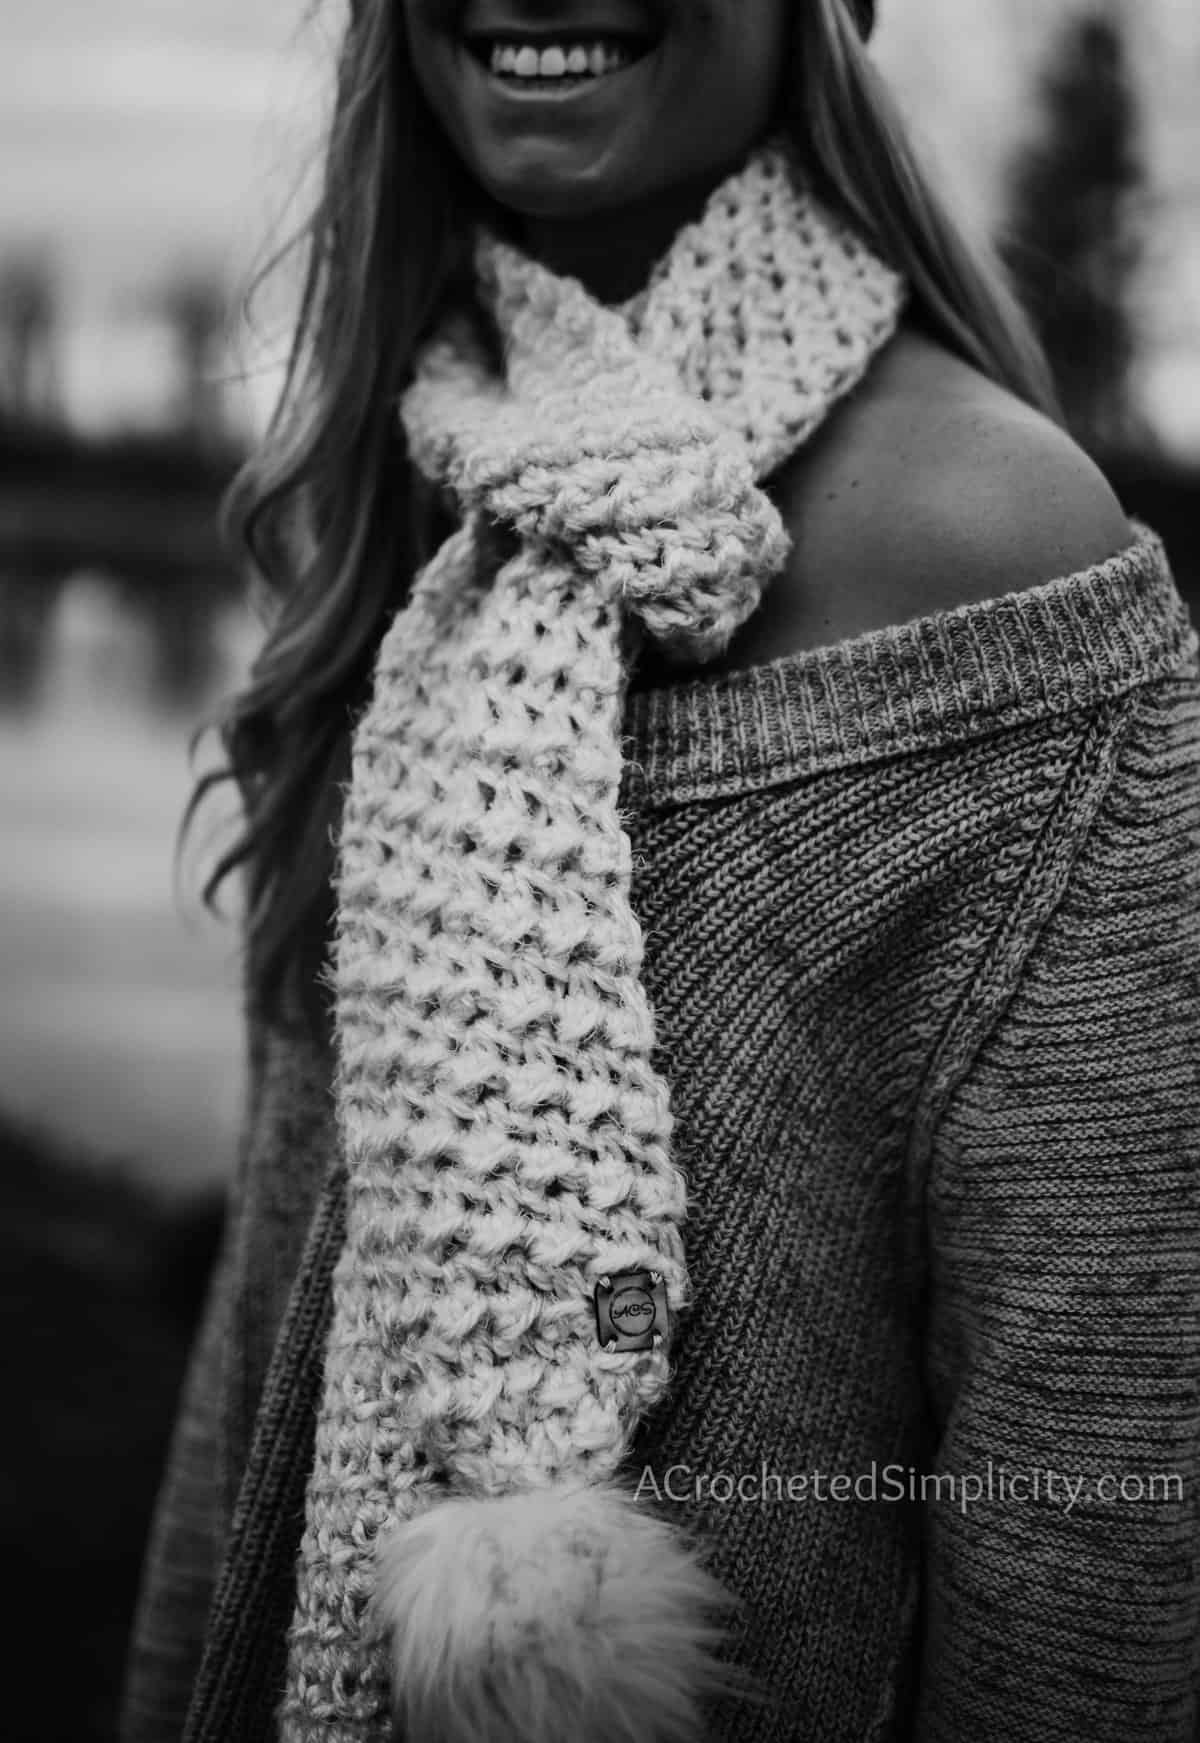 Free Crochet Pattern - Winter's Edge Scarf by A Crocheted Simplicity #freecrochetpattern #crochetscarfpattern #freecrochetscarfpattern #texturedcrochet #crochetpattern #scarfpattern #texturedstitchpattern #easycrochetpattern